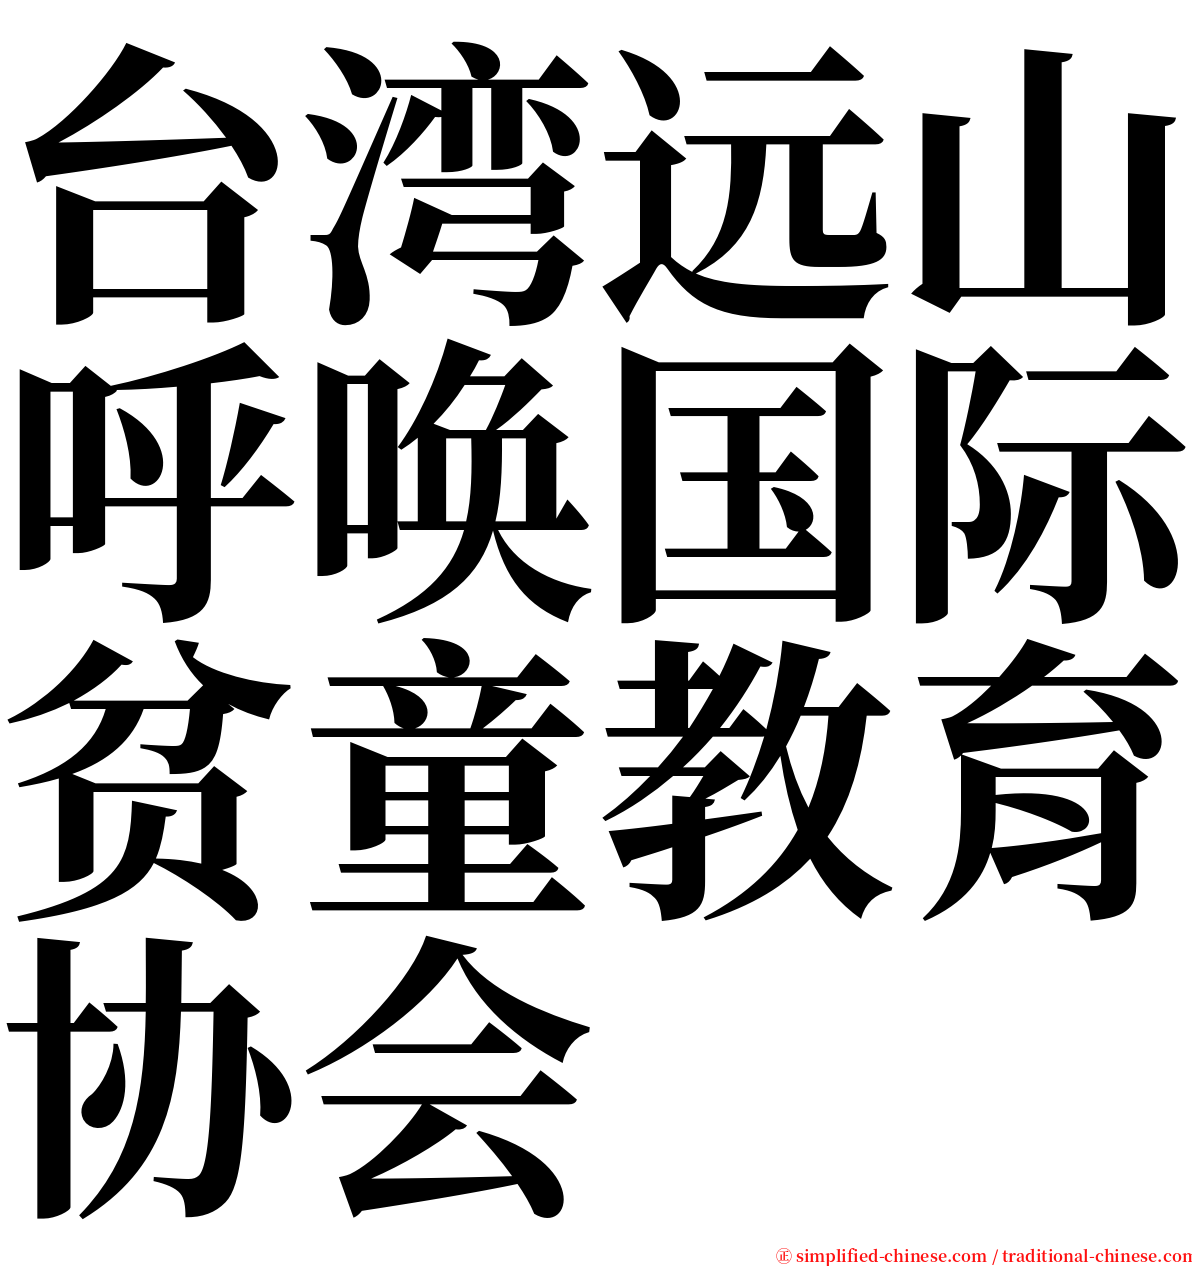 台湾远山呼唤国际贫童教育协会 serif font